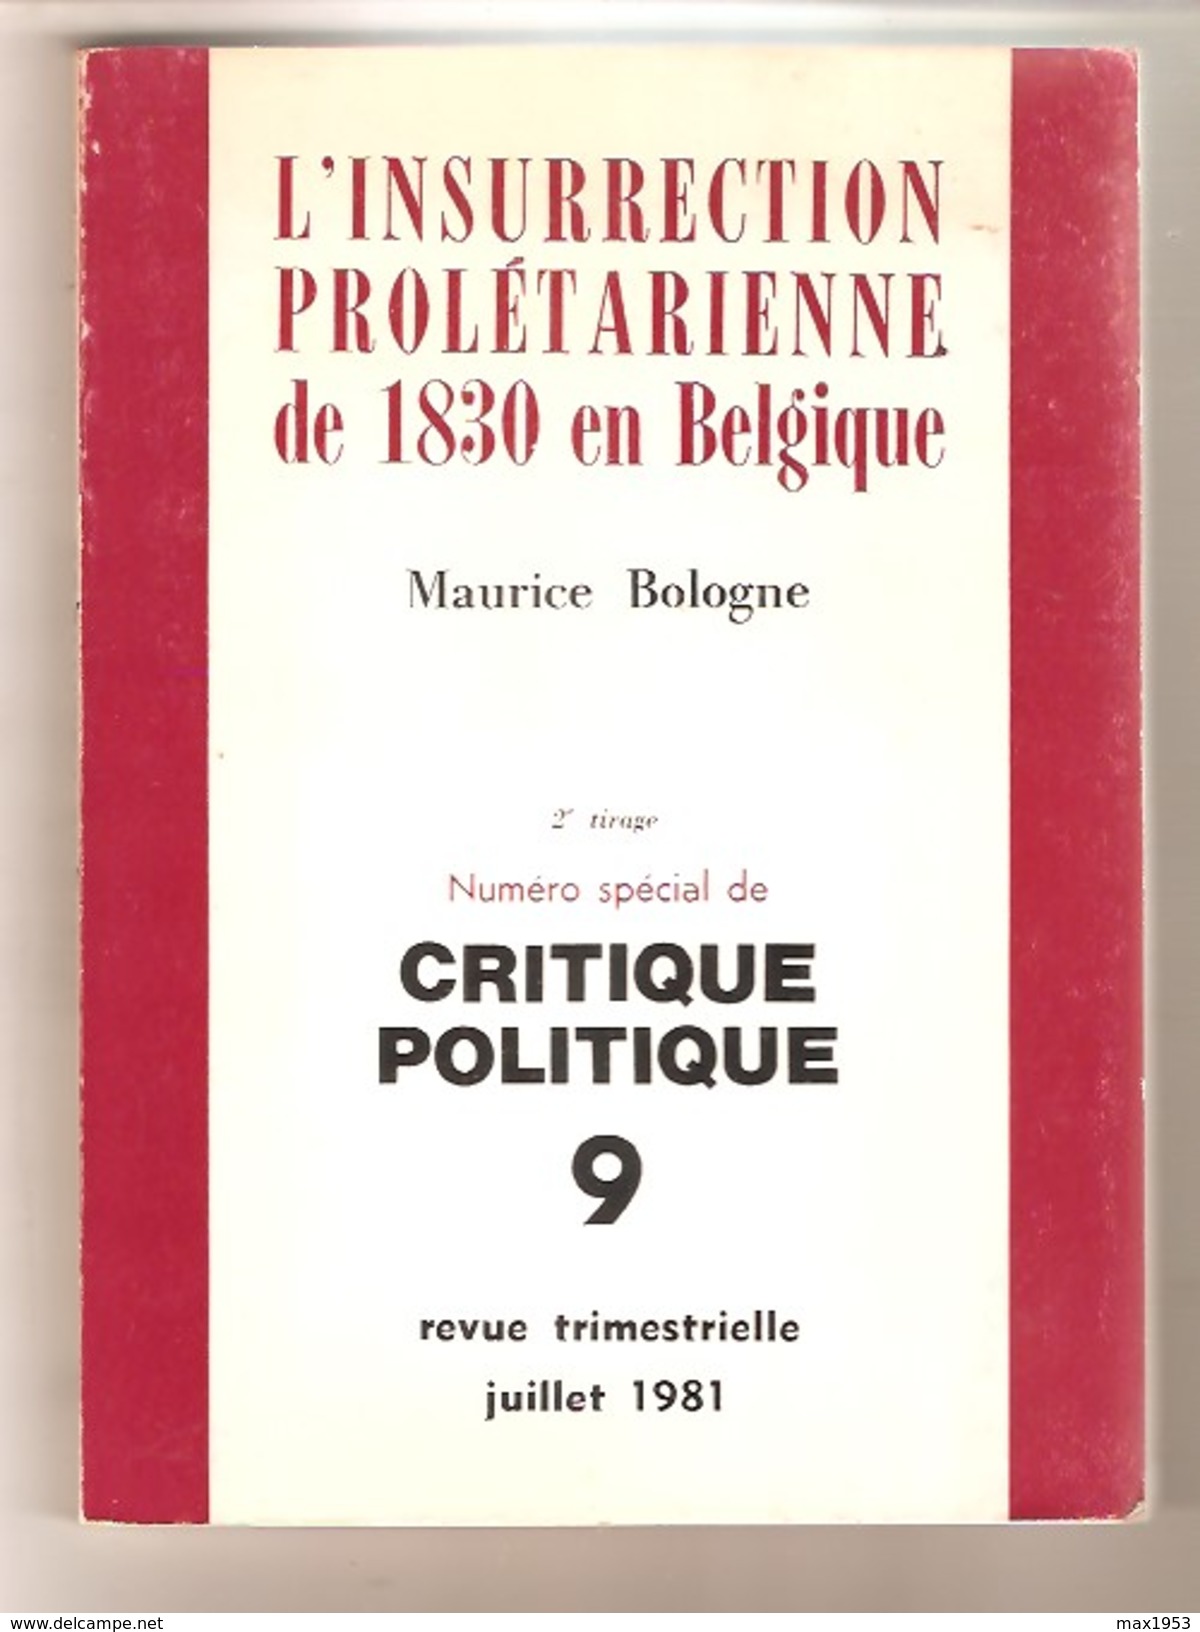 Maurice BOLOGNE - L'INSURRECTION PROLETARIENNE DE 1830 EN BELGIQUE -  Critique Politique N° 9 , 1981 - Belgique